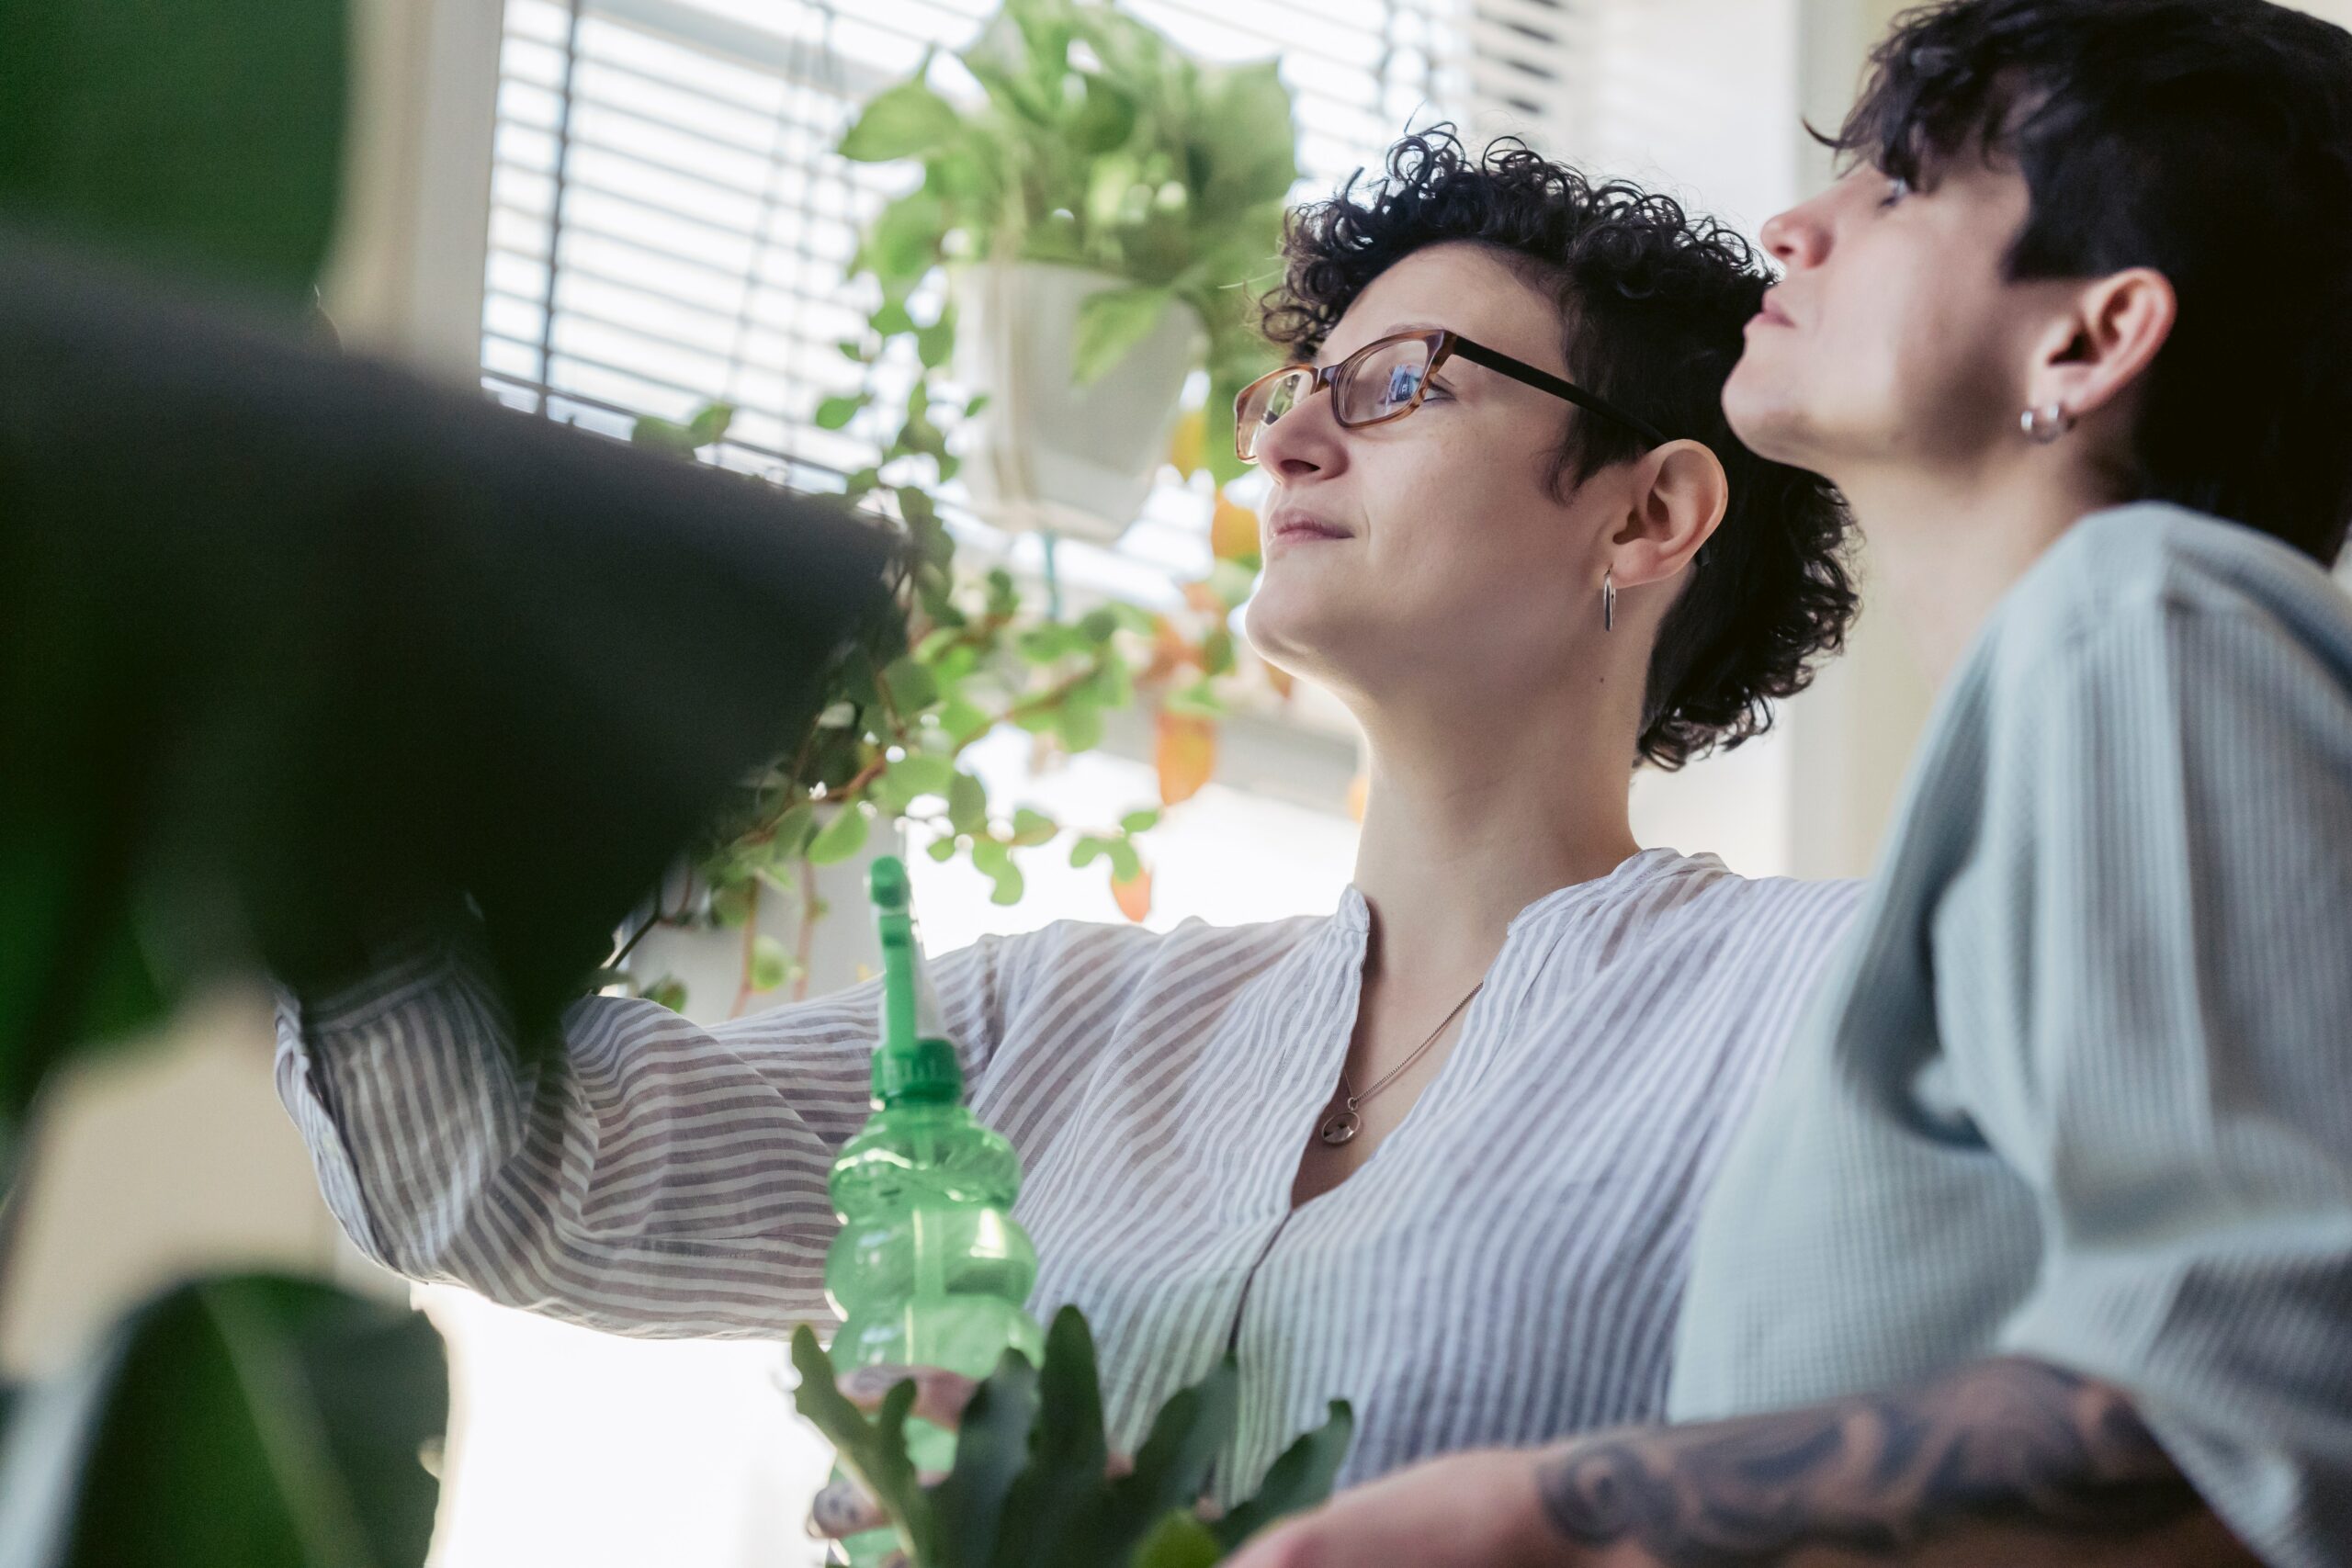 twee mensen die kijken naar hun plant met een plantenspuit in de hand